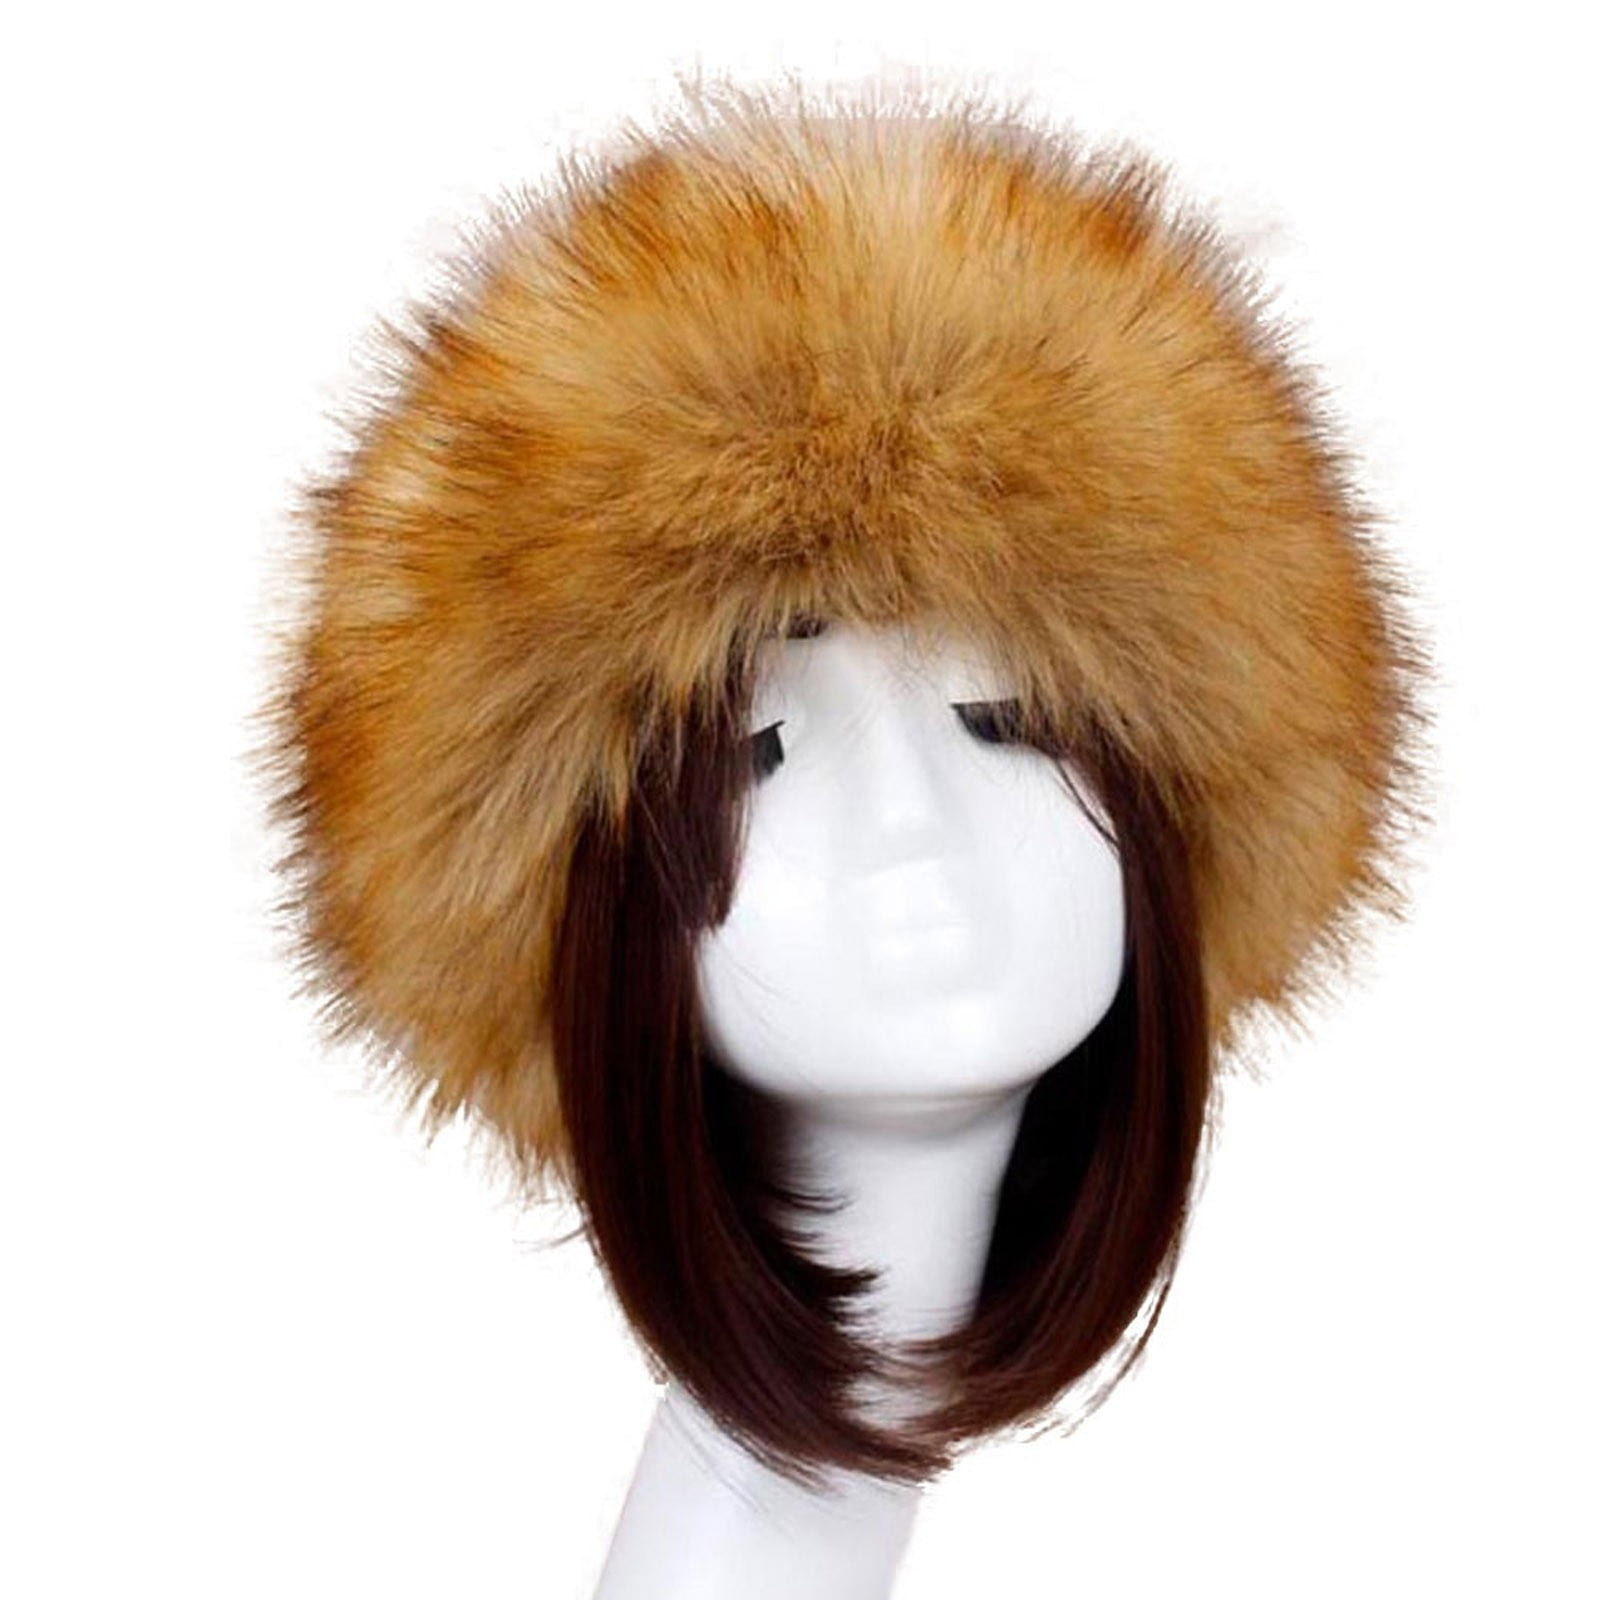 Wholesale faux fur hats-A1223-Faux fur cossack hat